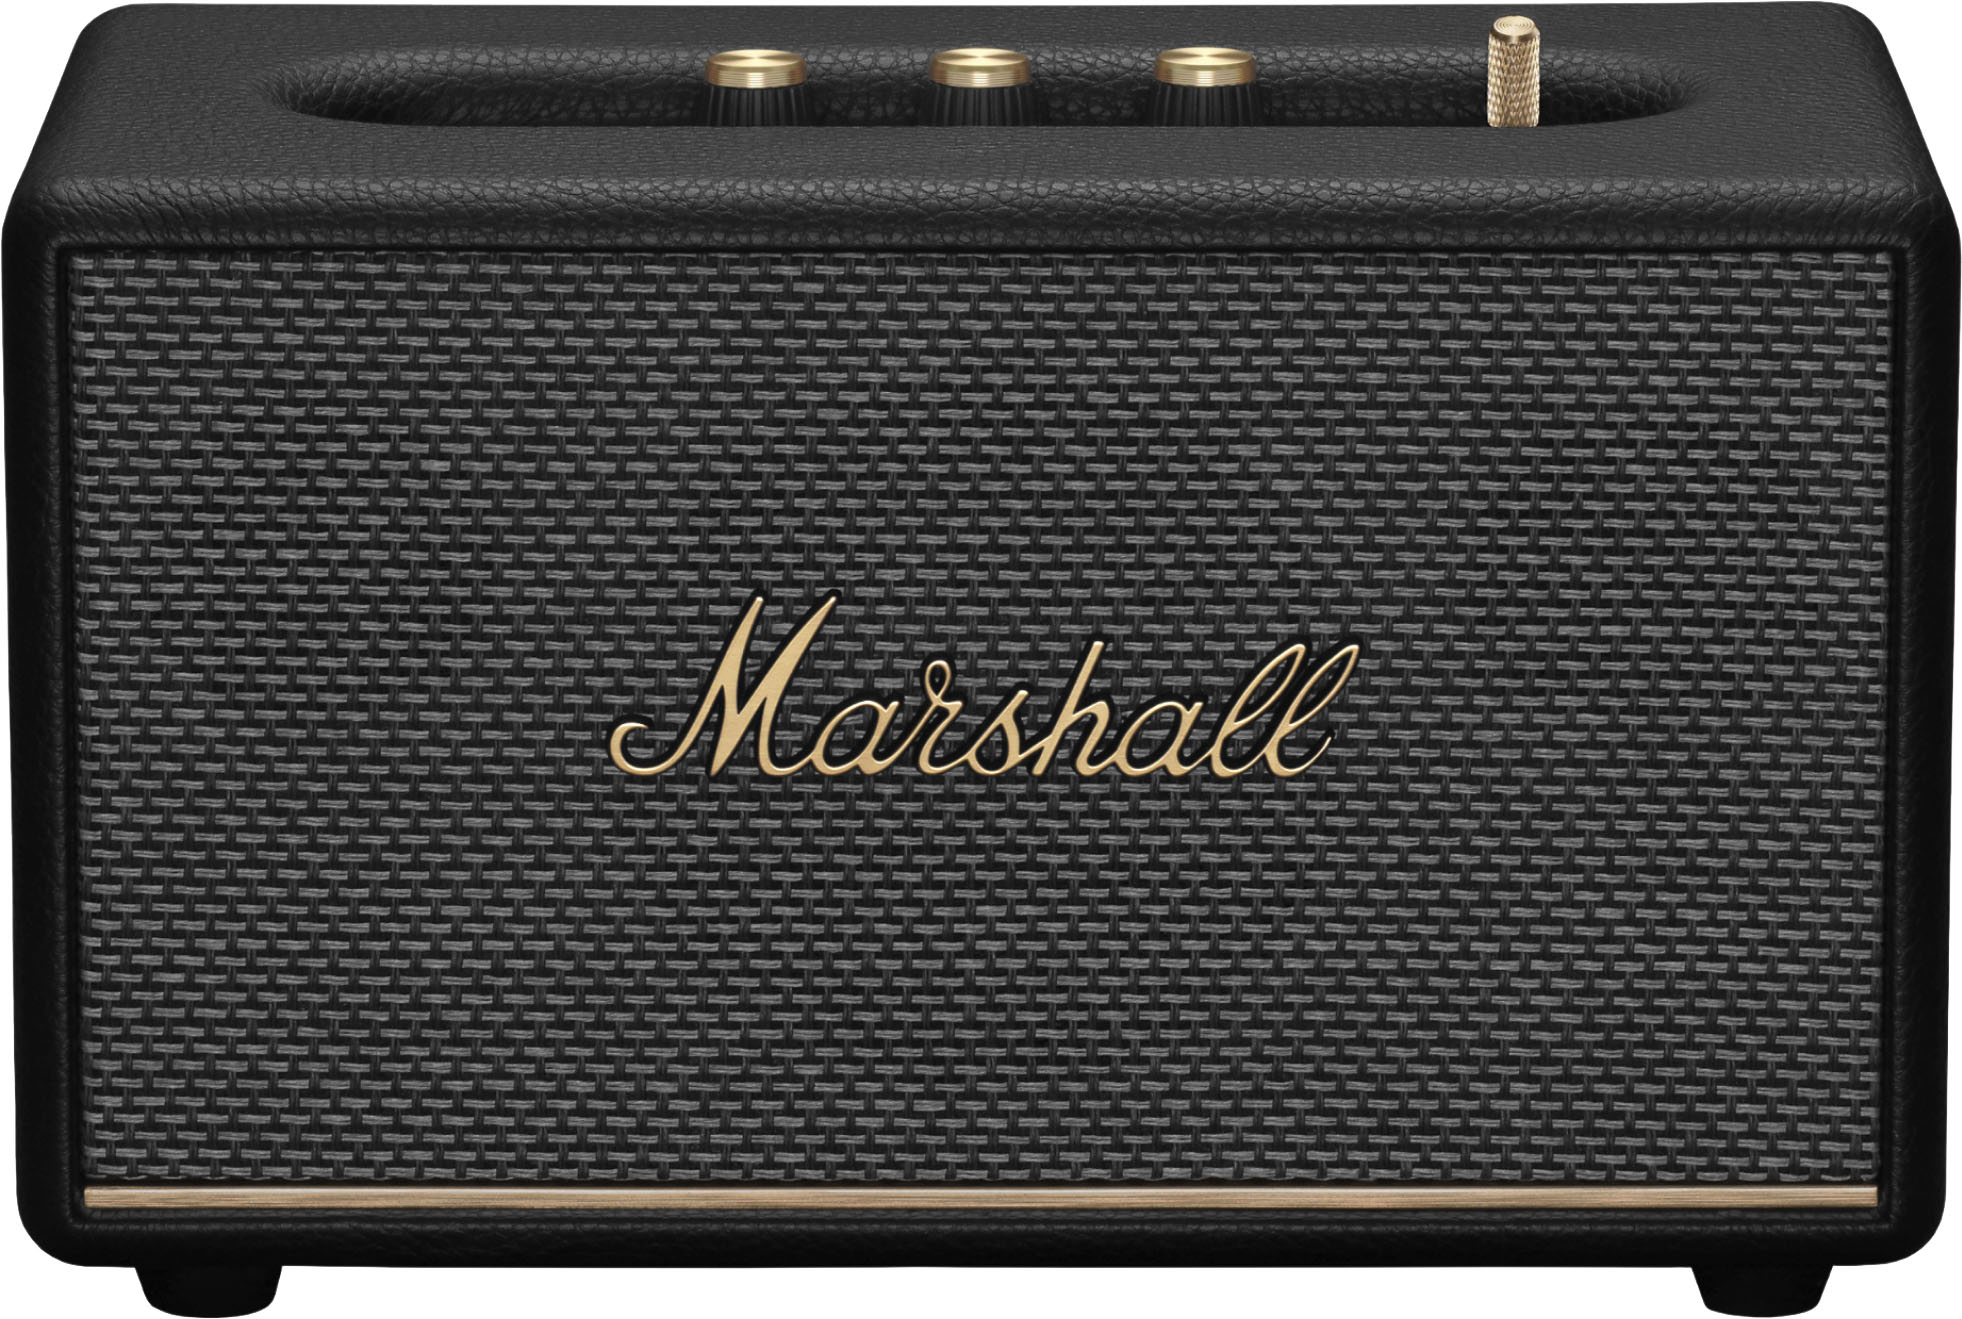 Black III Marshall Bluetooth Acton Speaker - Buy 1006008 Best